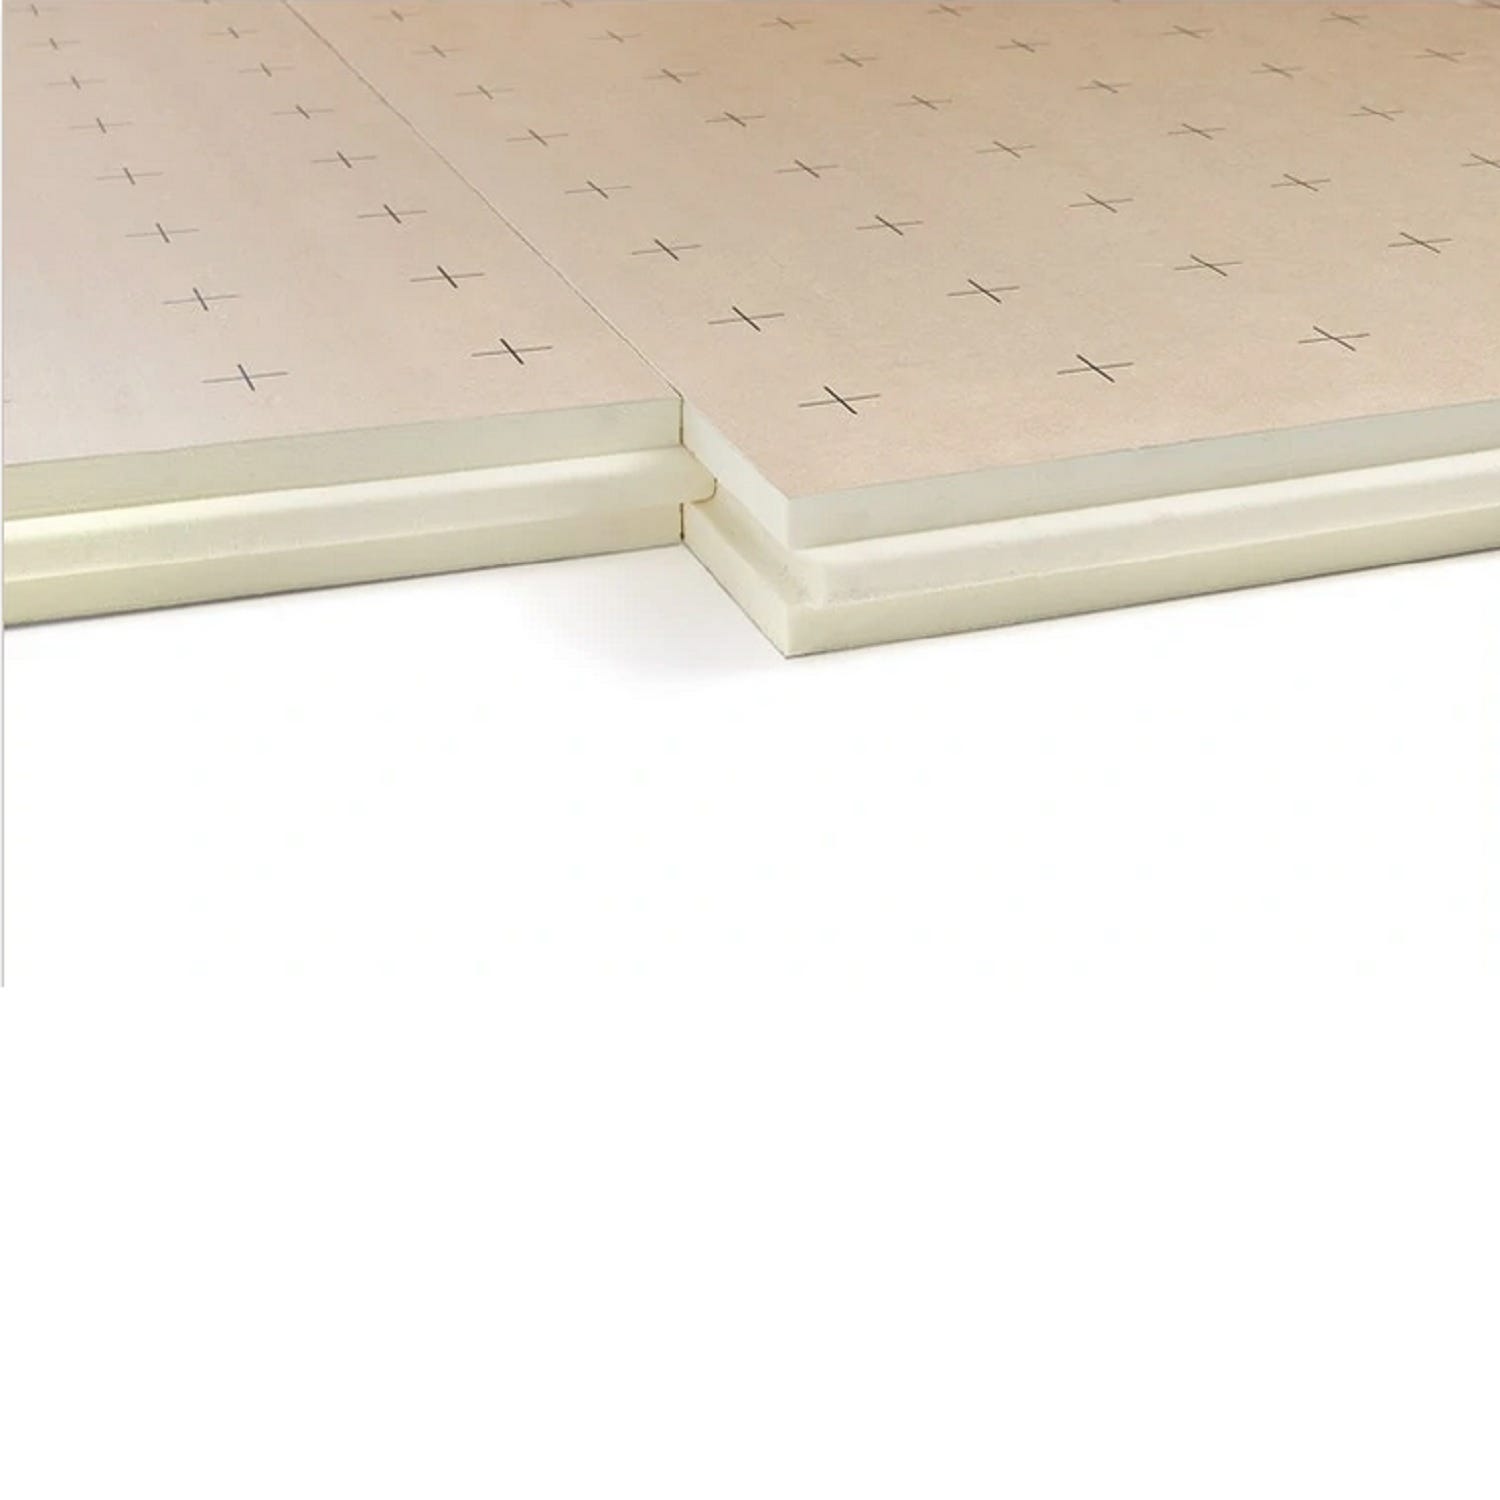 Dalle plancher chauffant épaisseur 44 millimètres R2.00 - paquet de 11 dalles - 13.2 m2 2